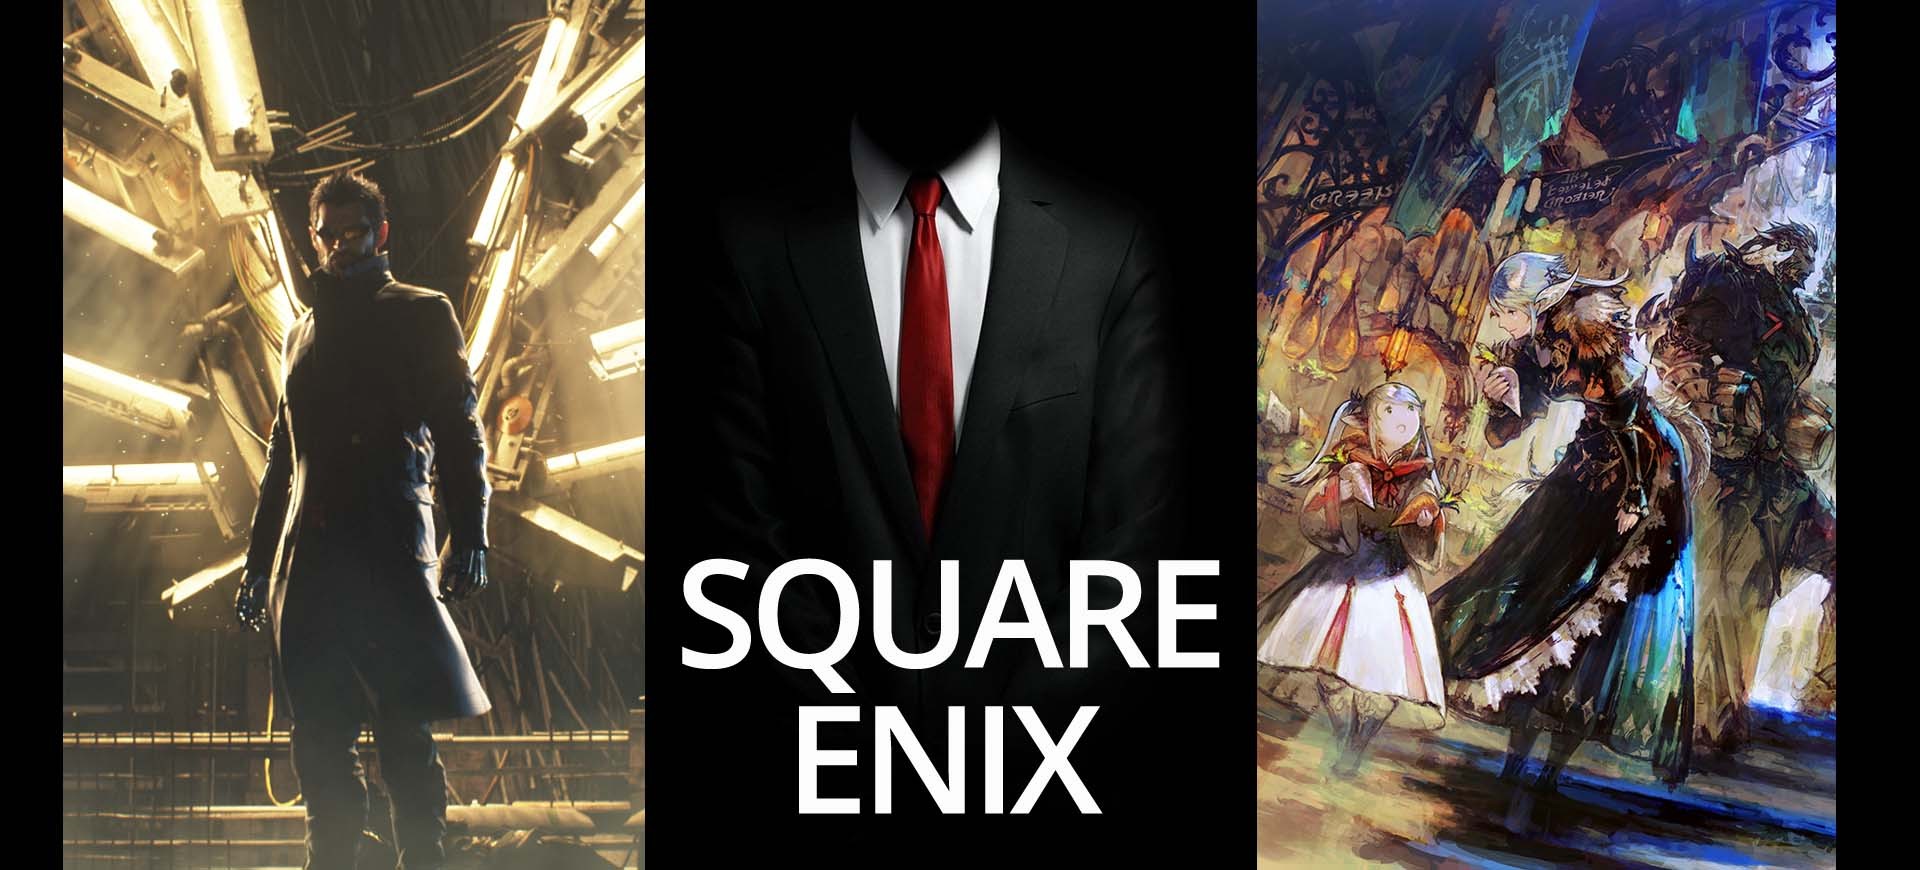 E3 2015: Quân đoàn hùng mạnh của Square Enix